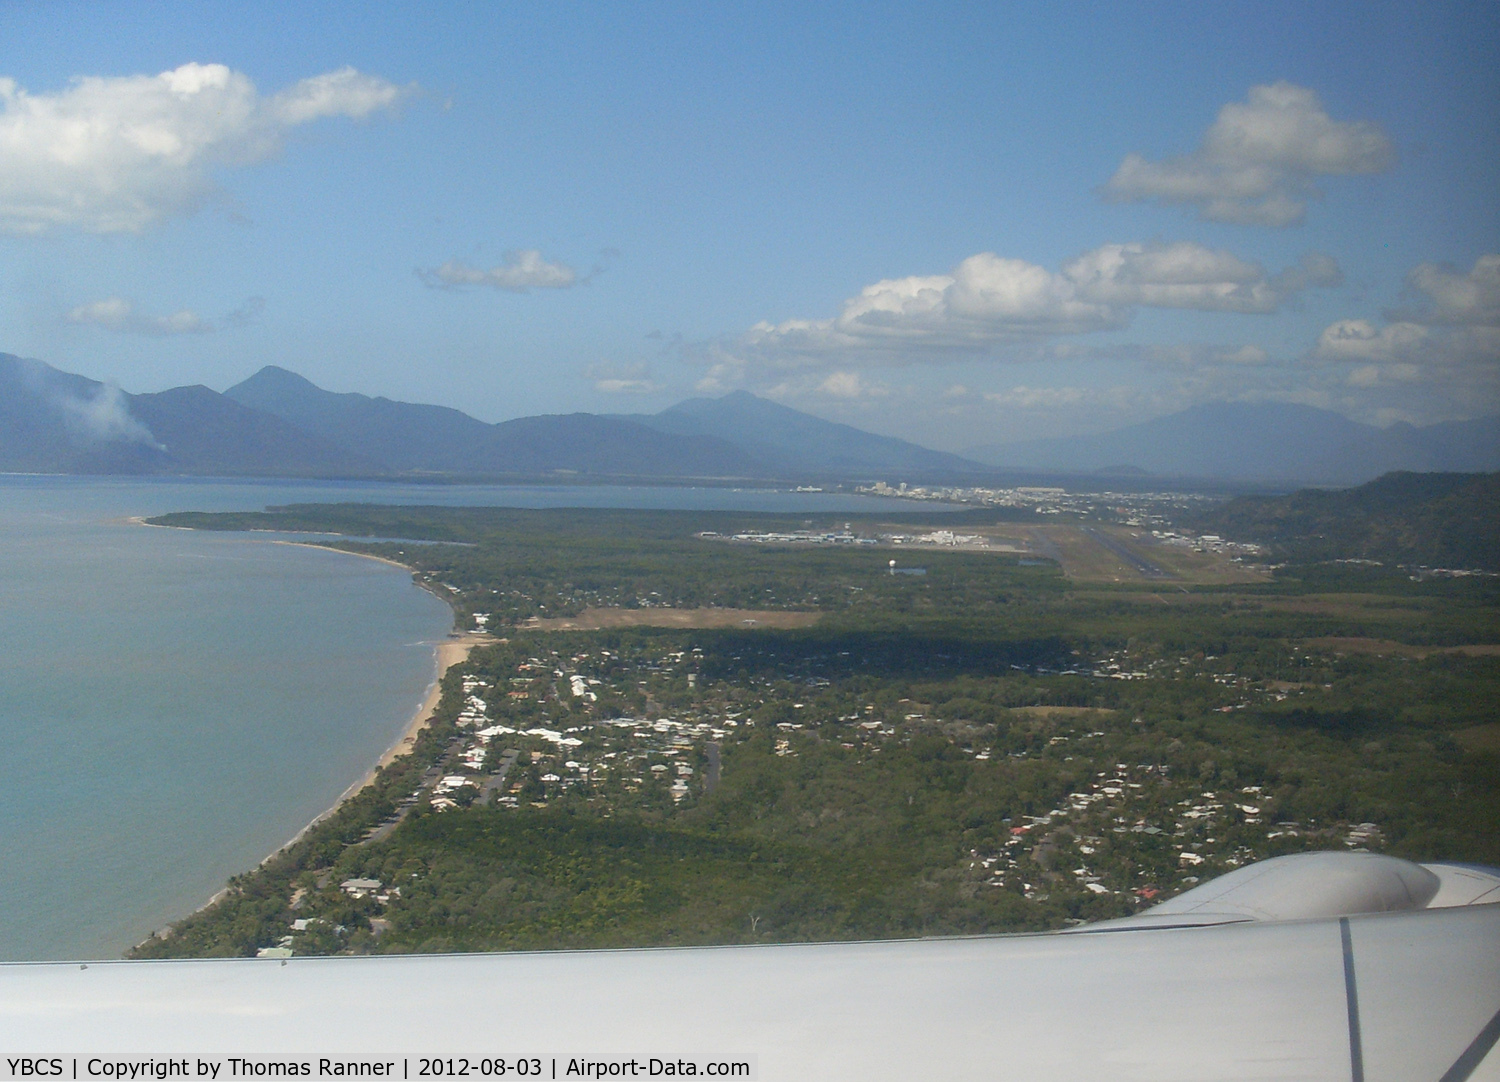 Cairns International Airport, Cairns, Queensland Australia (YBCS) - Cairns approach